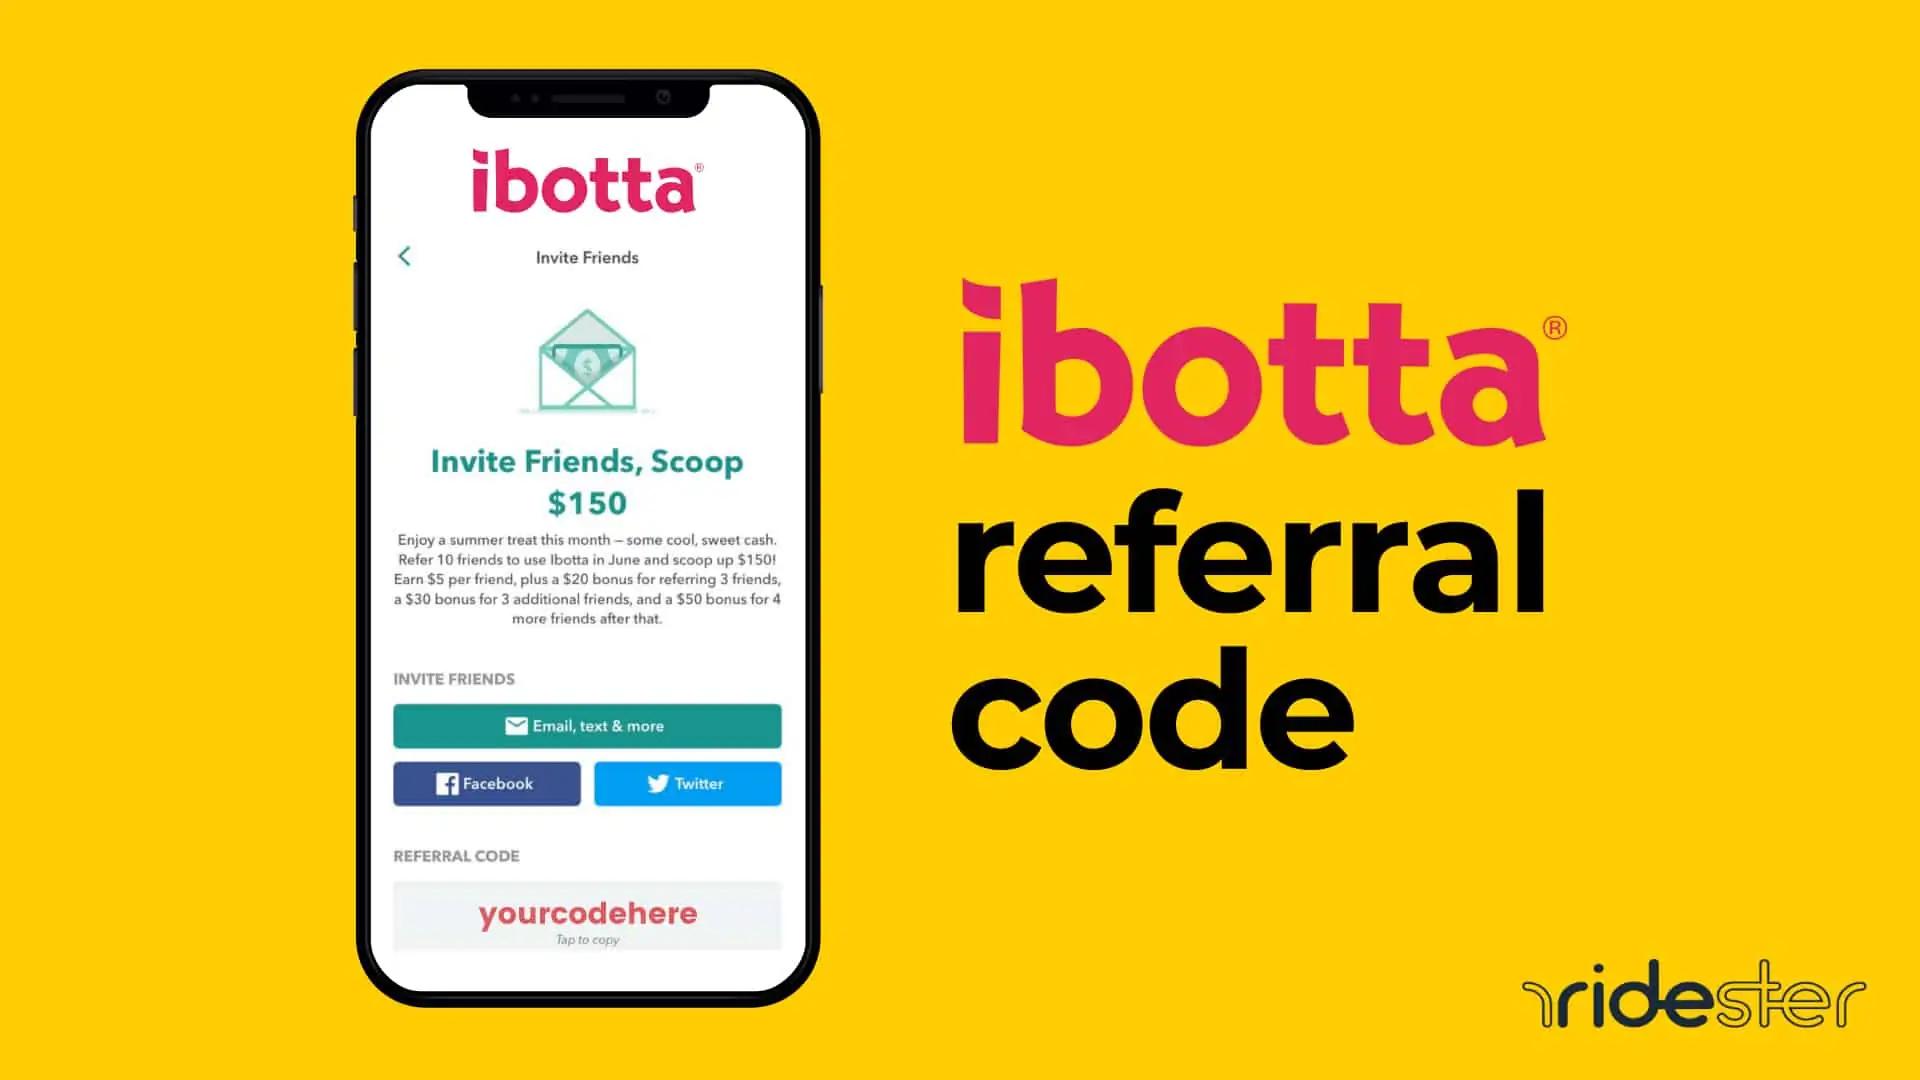 Ibotta Referral Code: Ibotta Referral Code Benefits